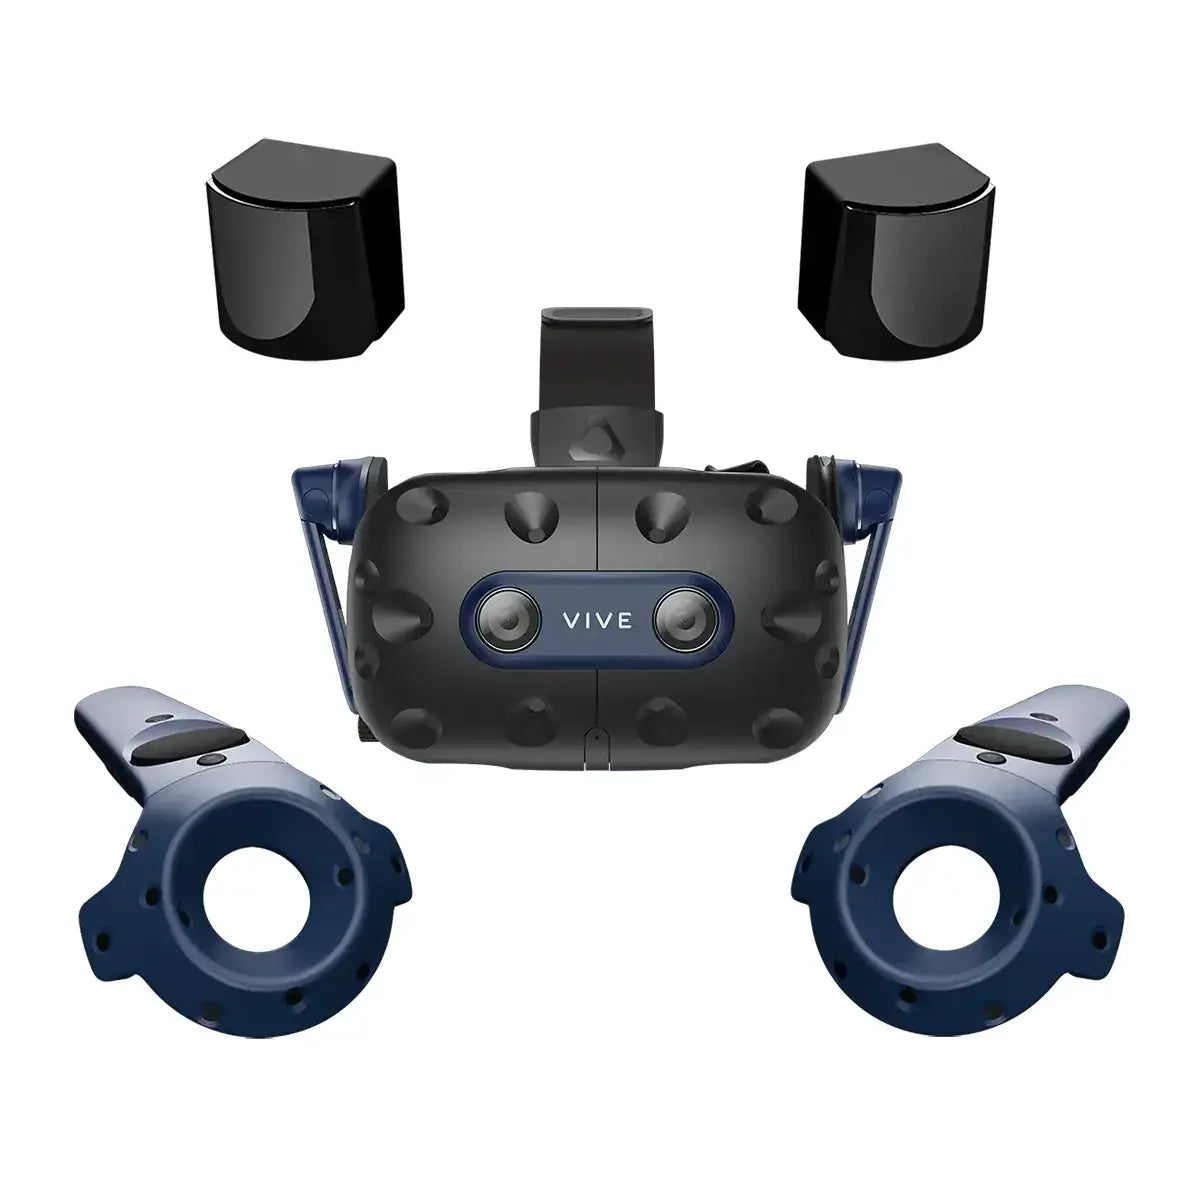 KAT Mini S & VIVE Pro 2 Full Kit Bundle | VR Business Solution